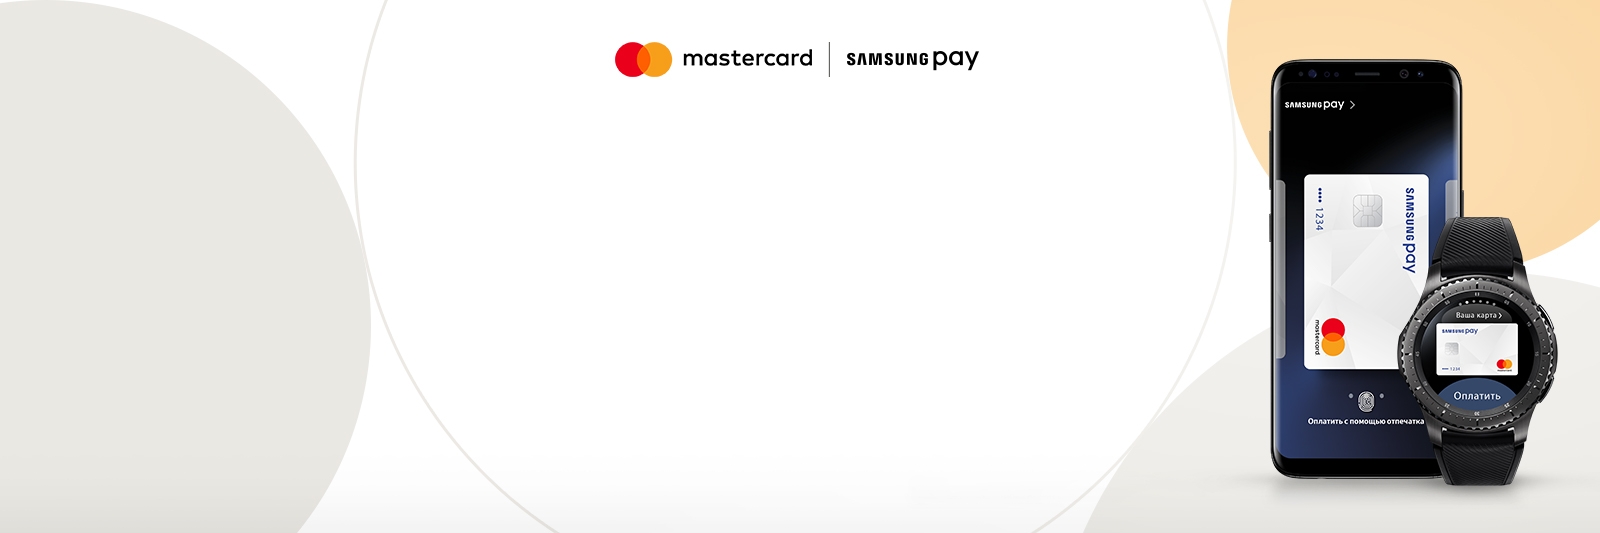 Приложение вместо самсунг пей. Samsung pay. Бесконтактные платежи Samsung pay. MASTERCARD Samsung pay. Оплата самсунг пей.